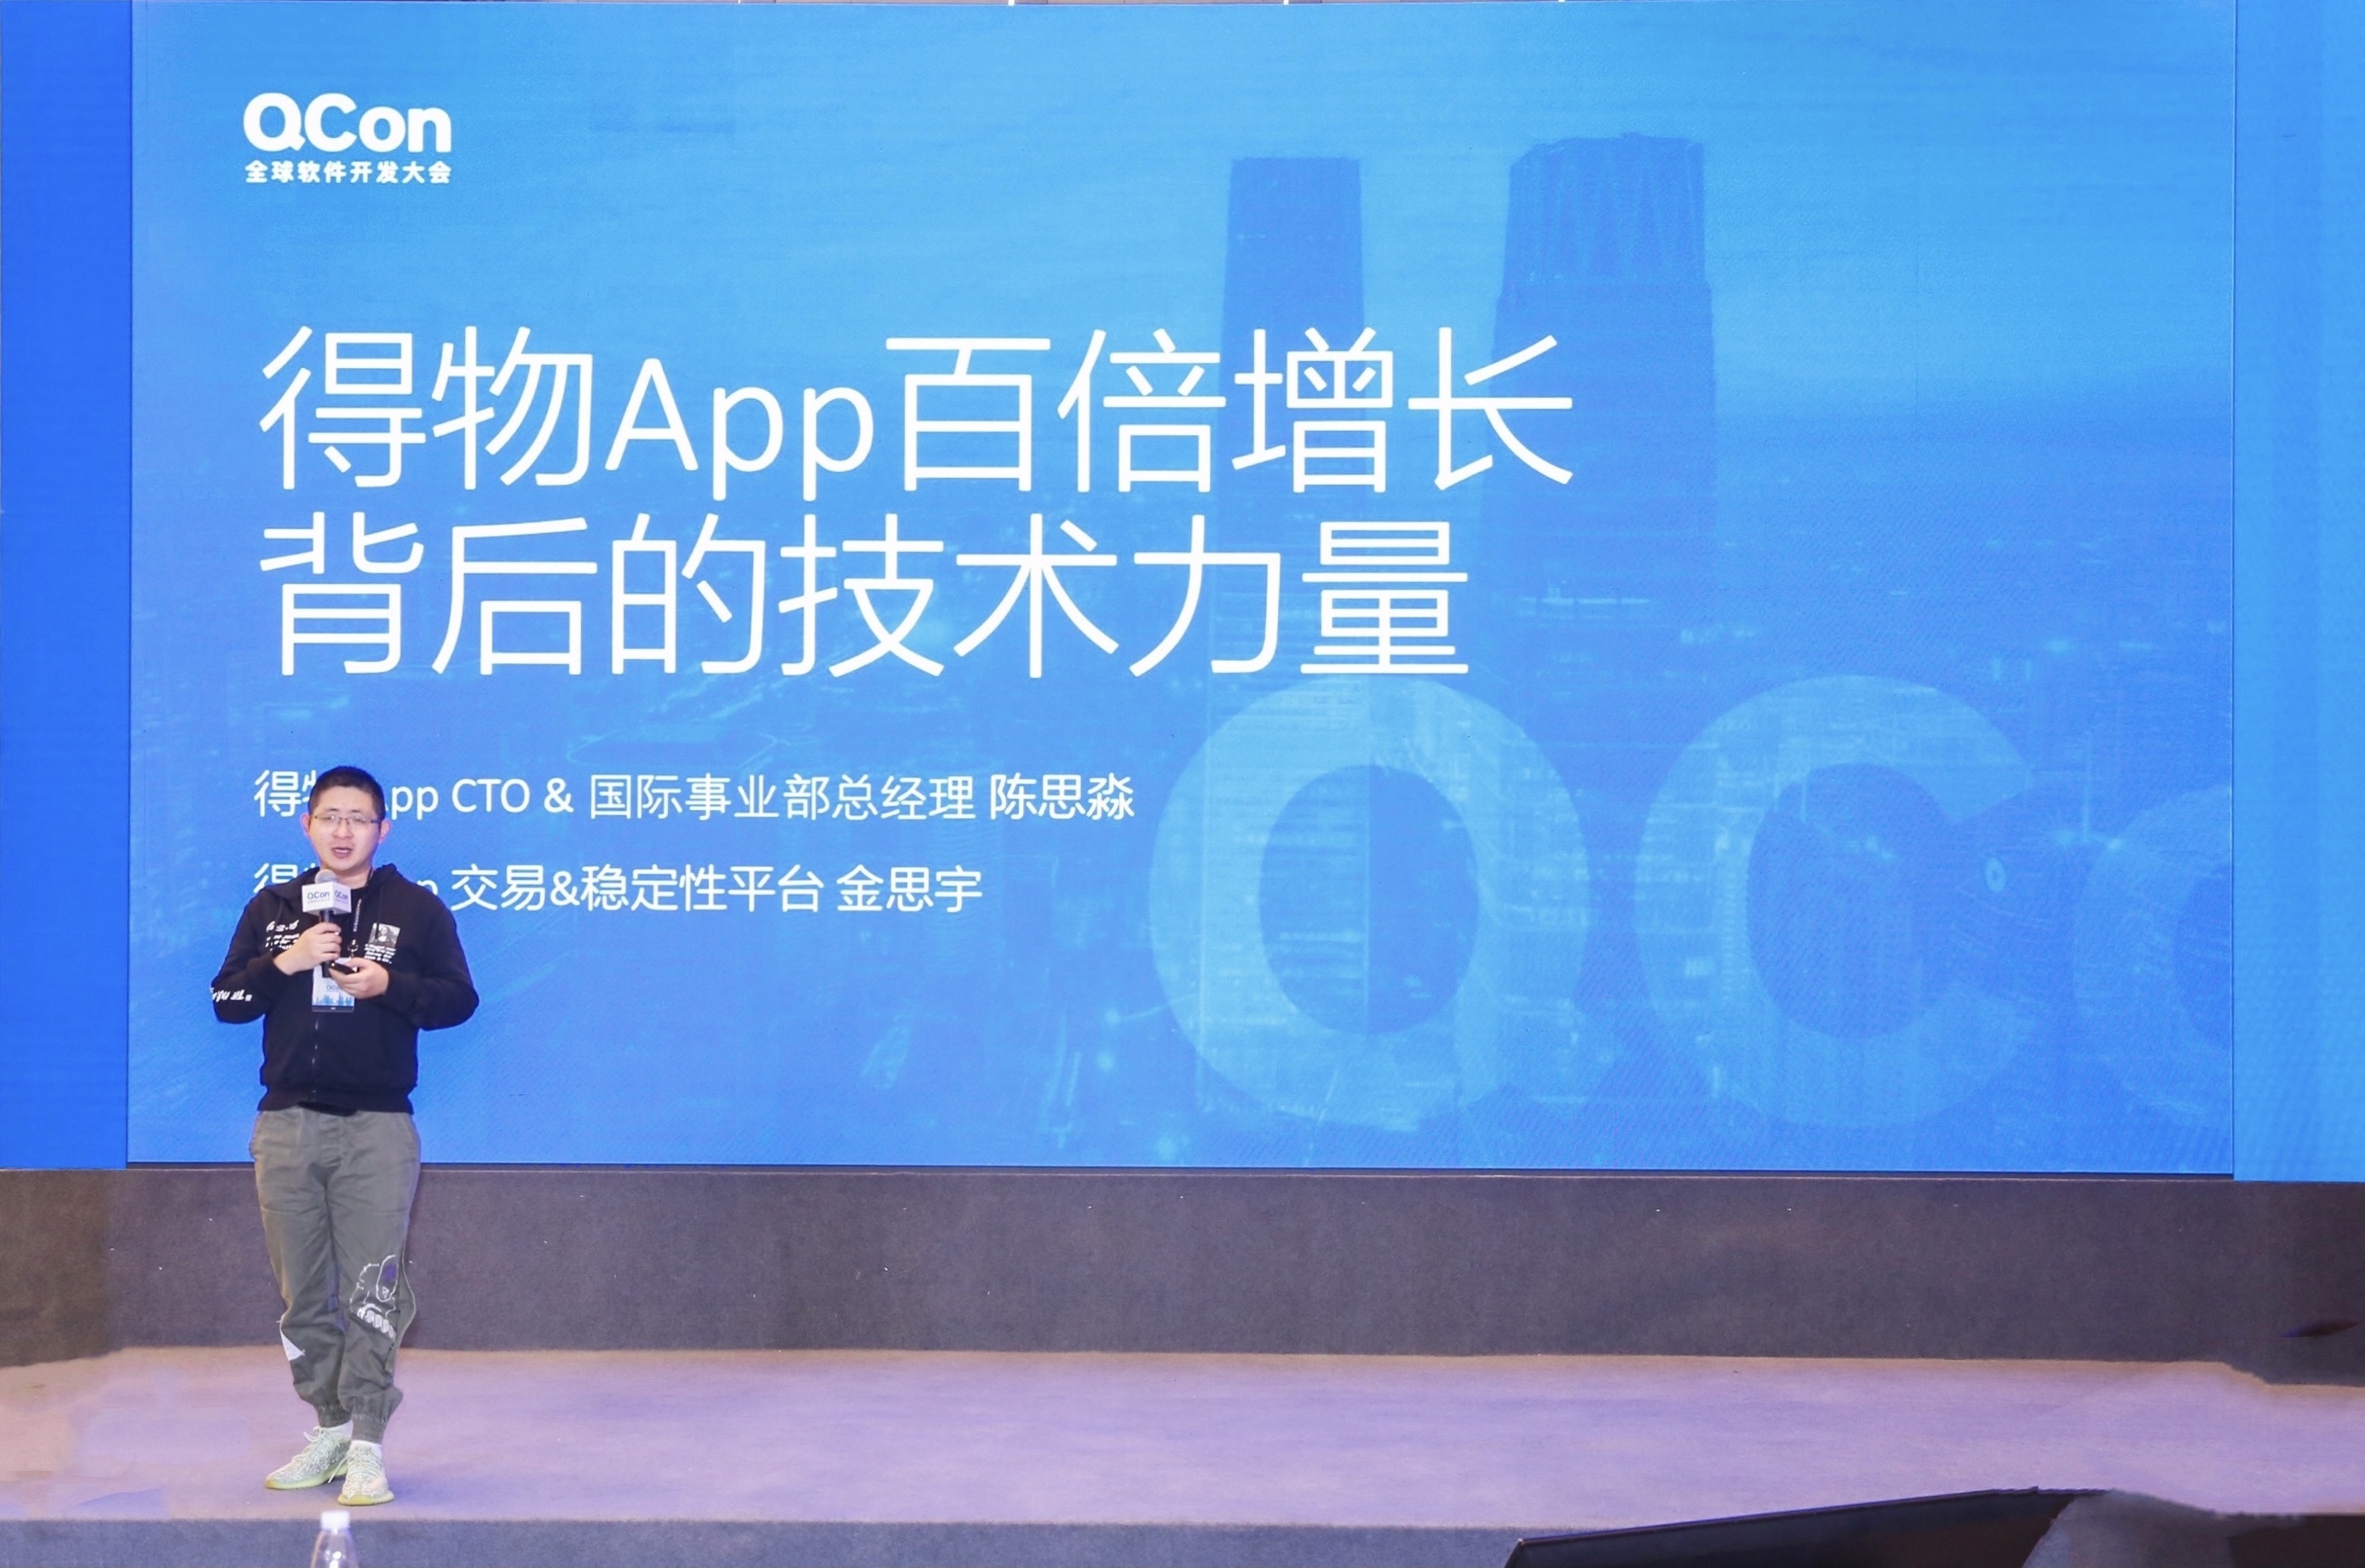 得物App亮相QCon全球软件开发大会，分享百倍增长背后的技术力量